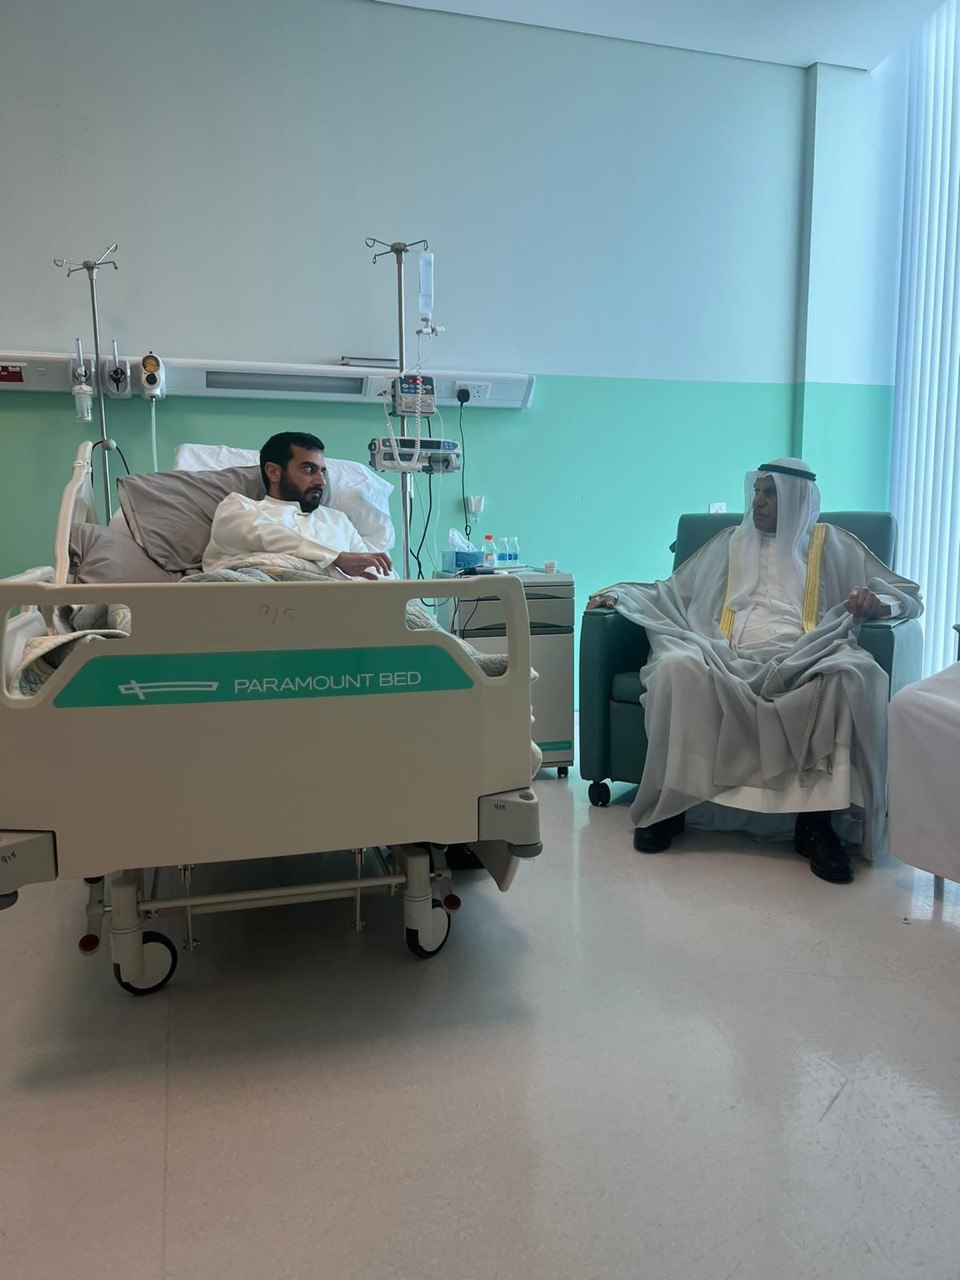  السعدون يزور الأنبعي في المستشفى الأميري للاطمئنان على صحته